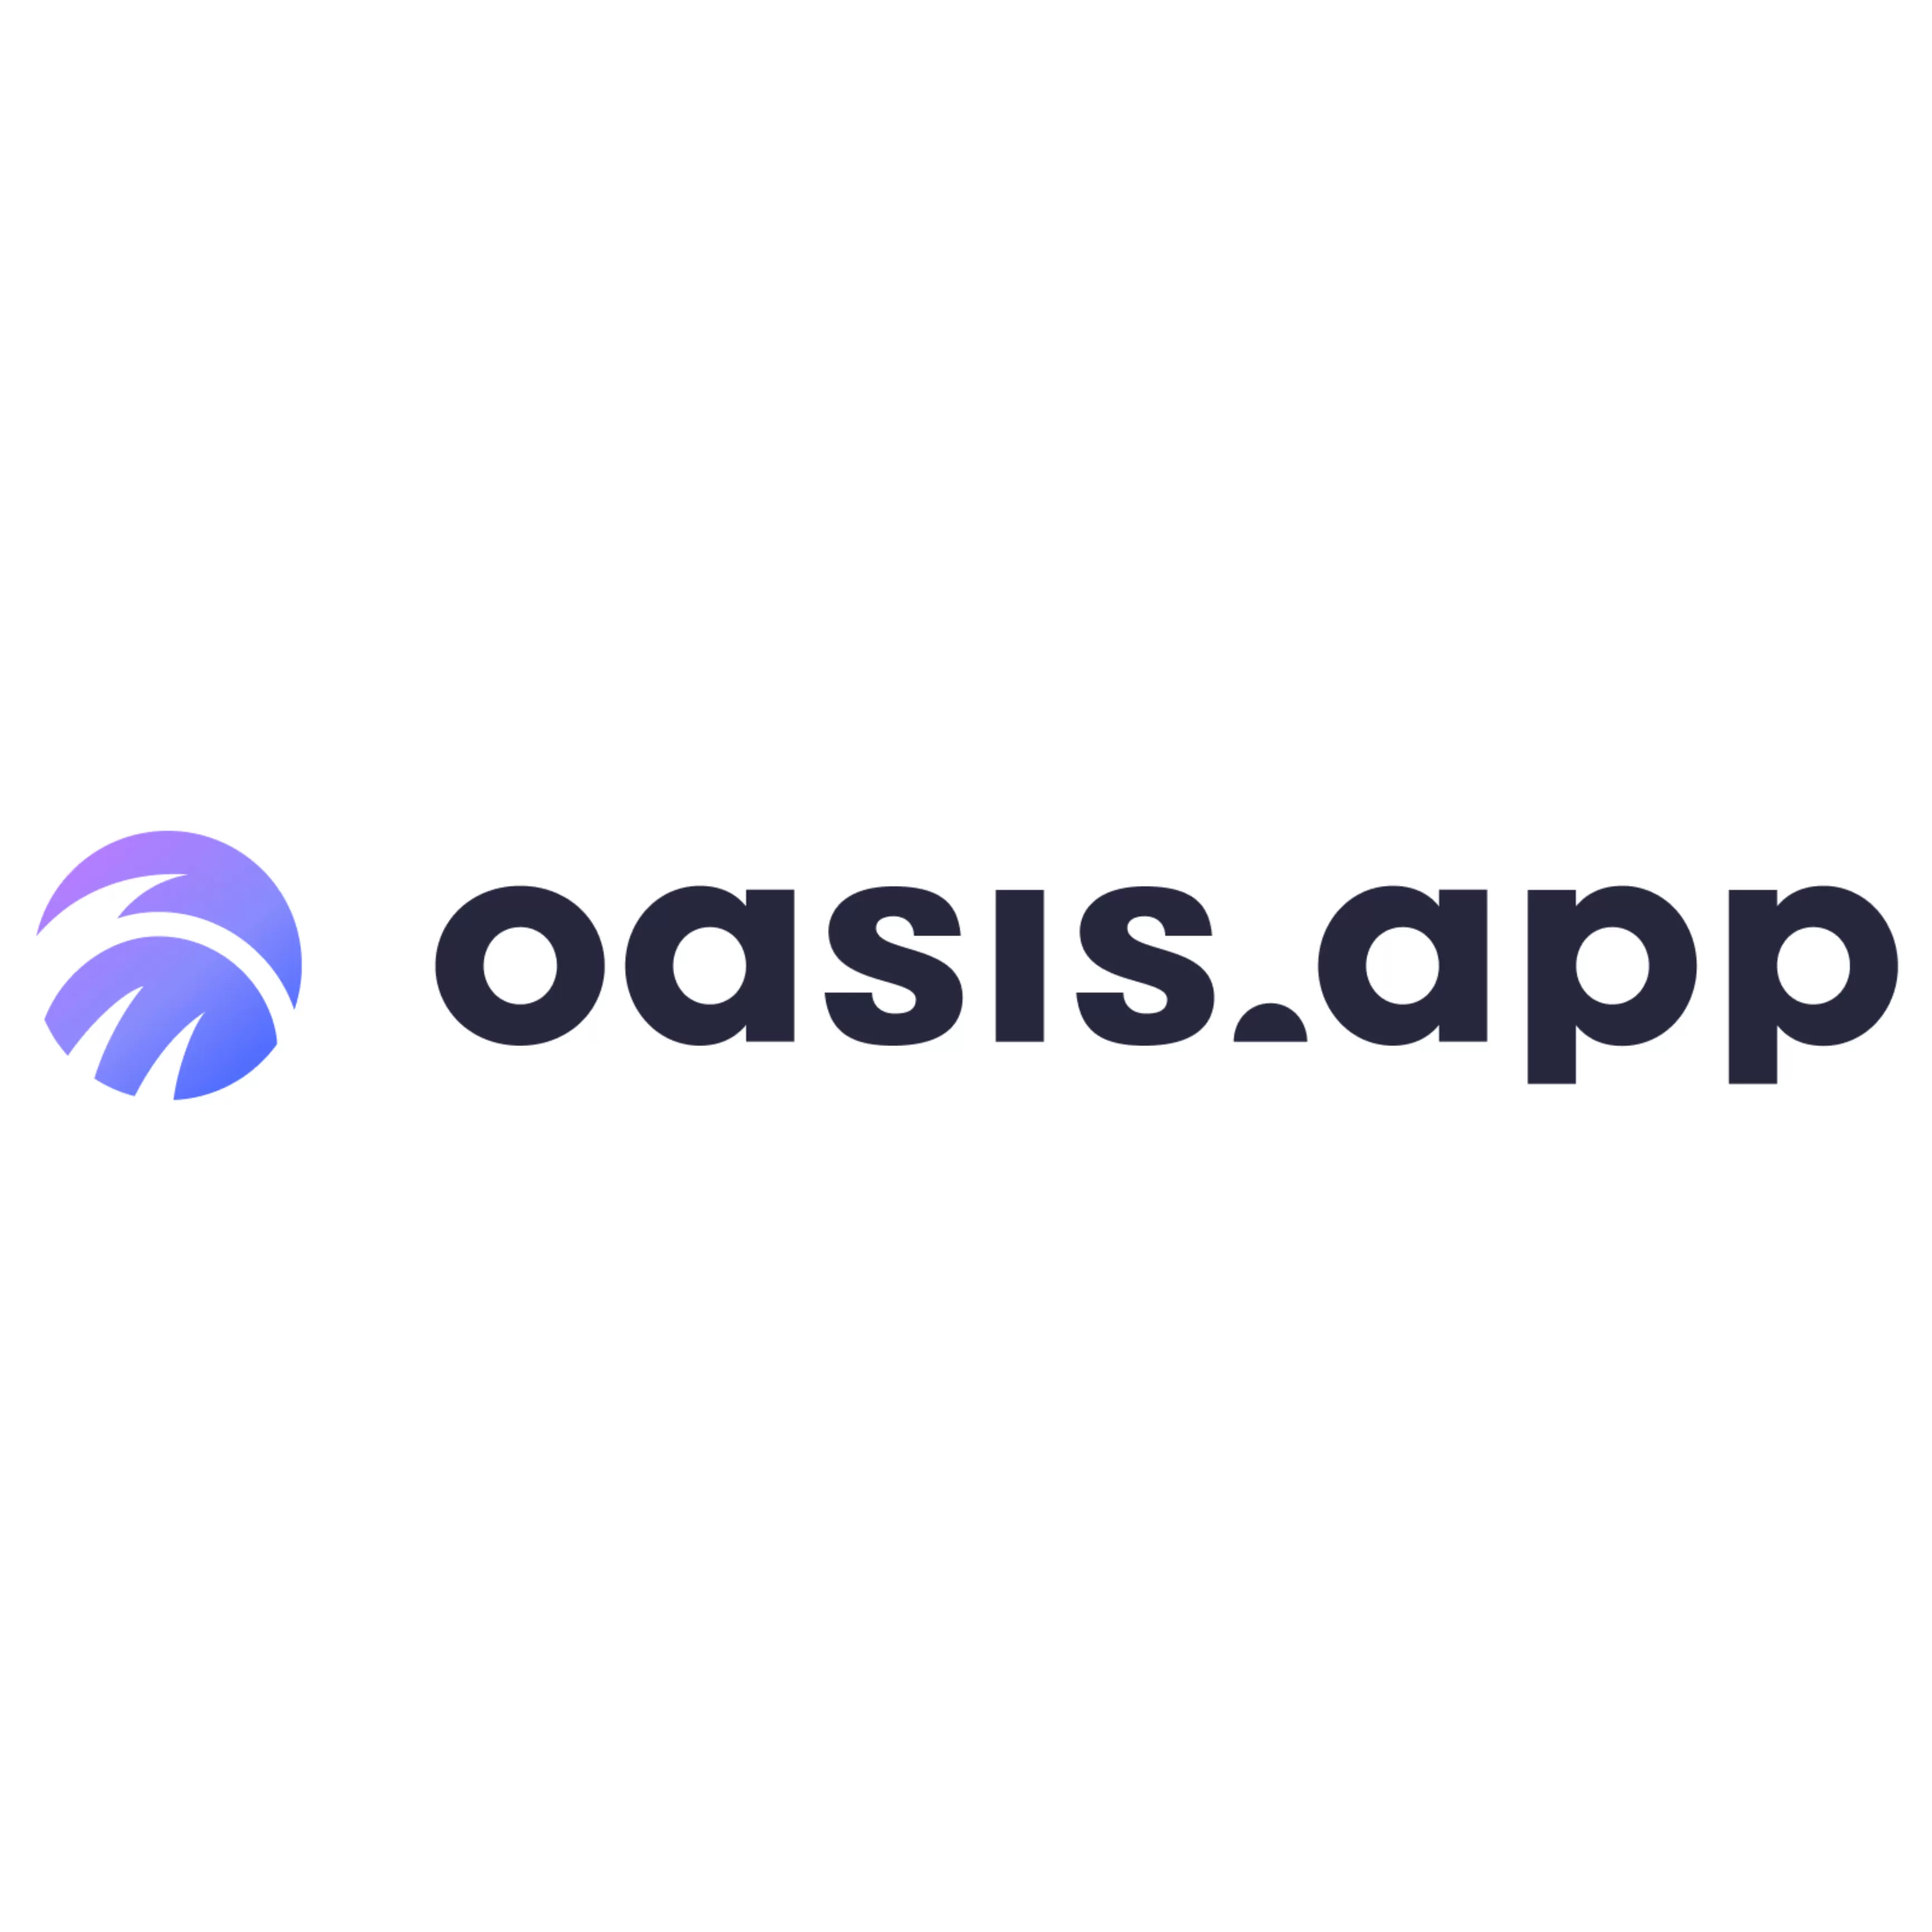 Oasis.app